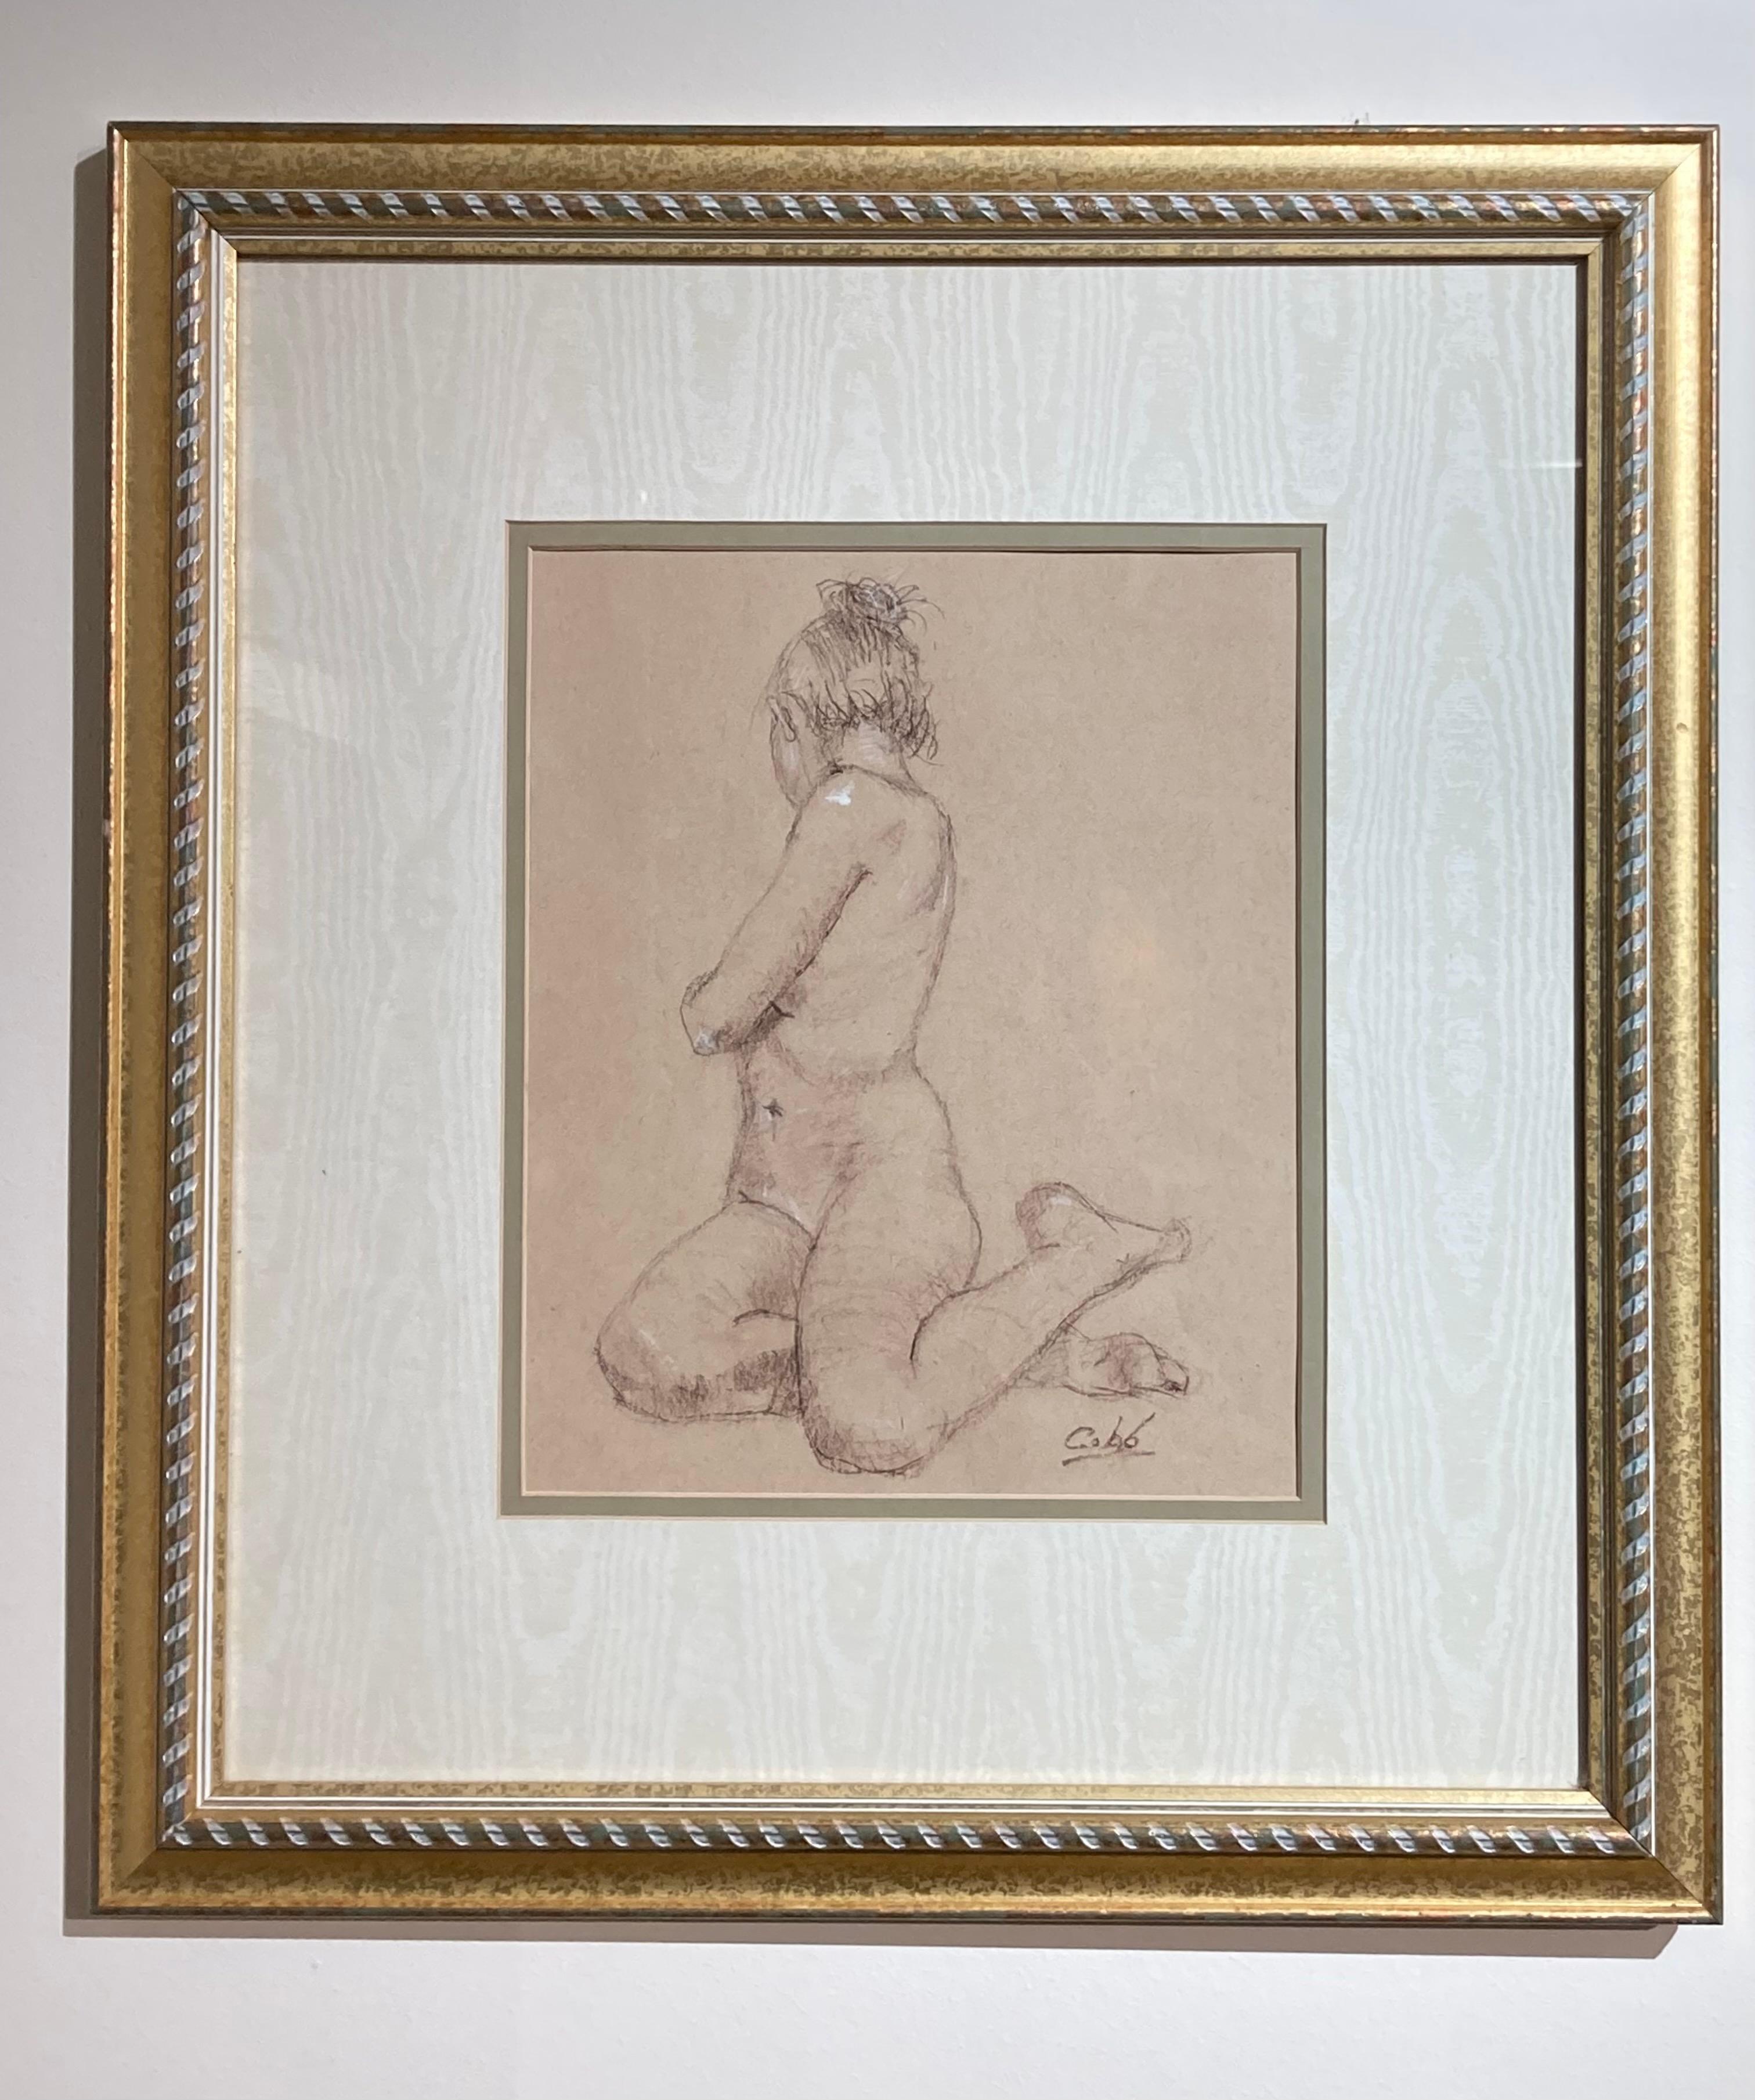 Diese gerahmte 21" x 19" große Zeichnung des Künstlers James Cobb, "Erika in Gesture I", zeigt das weibliche Modell in sitzender Haltung. Das Modell sitzt mit angezogenen Beinen unter dem Unterkörper, die Taille ist nach hinten gedreht. Ihr